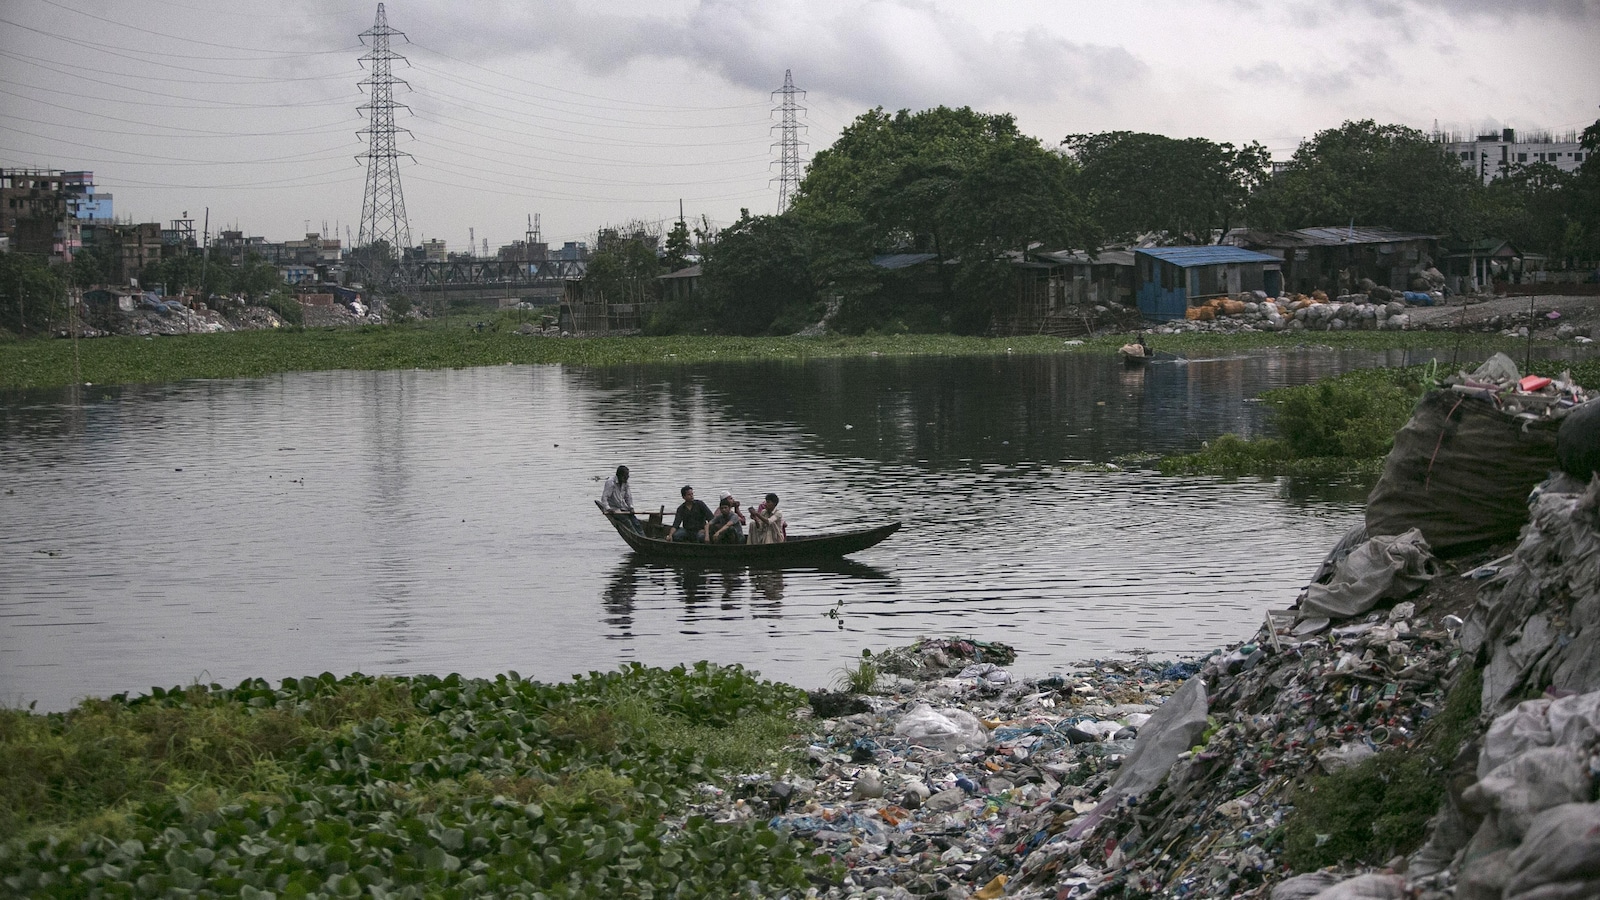 Quatre hommes naviguent en pirogue sur la rivière, dont les rives sont couvertes de déchets.